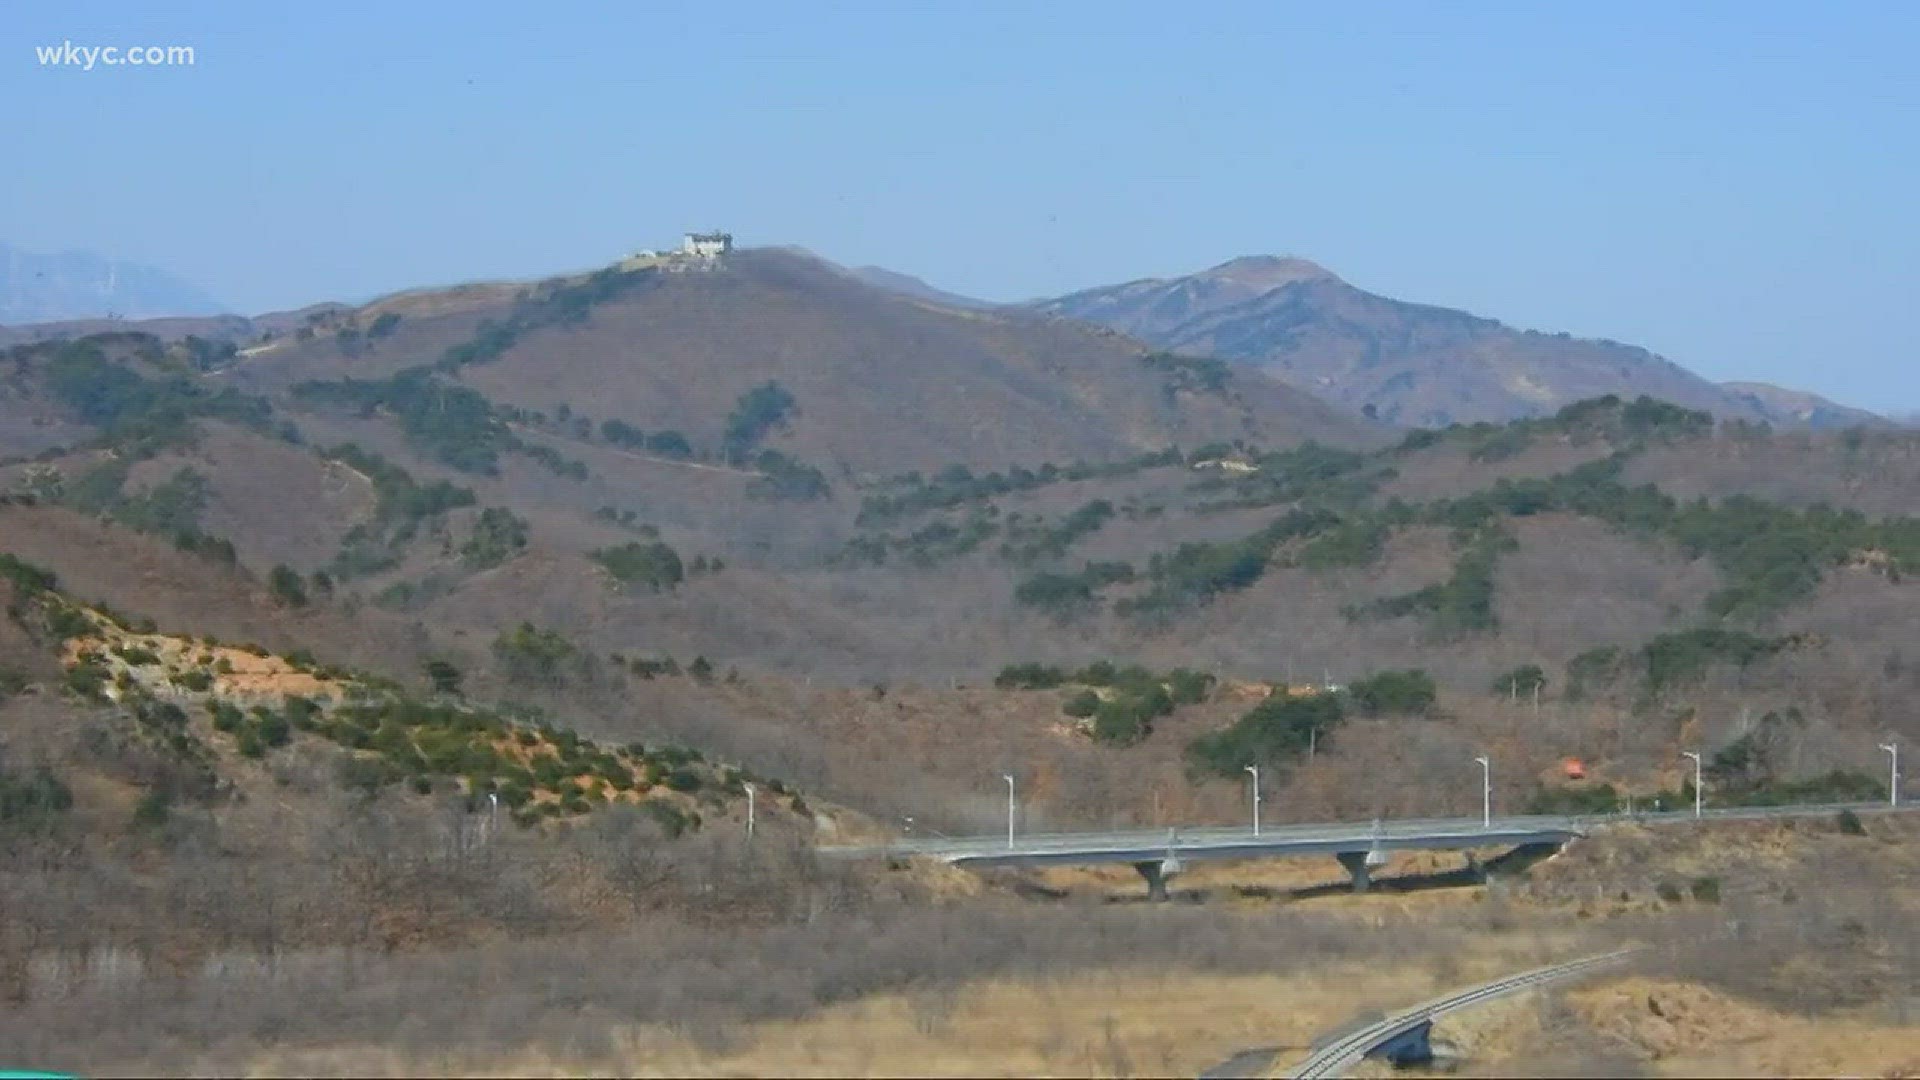 Exploring the DMZ dividing North and South Korea